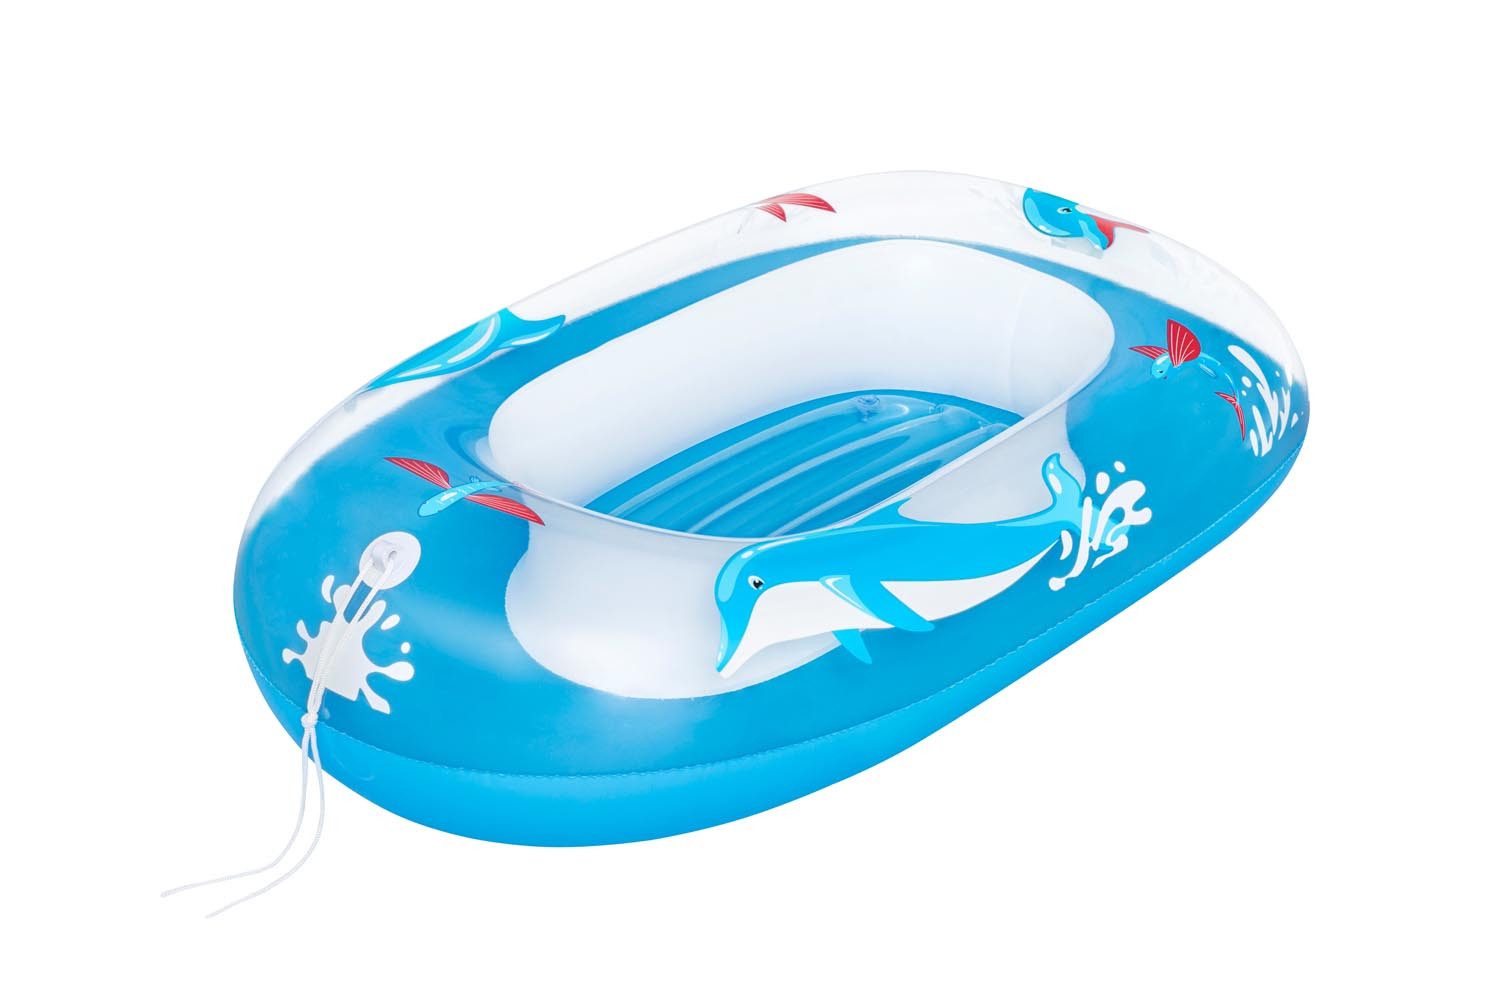 Bestway Kinder-Schlauchboot Bestway Kinder-Schlauchboot - Aufblasbares Kinderboot Gummiboot Blau